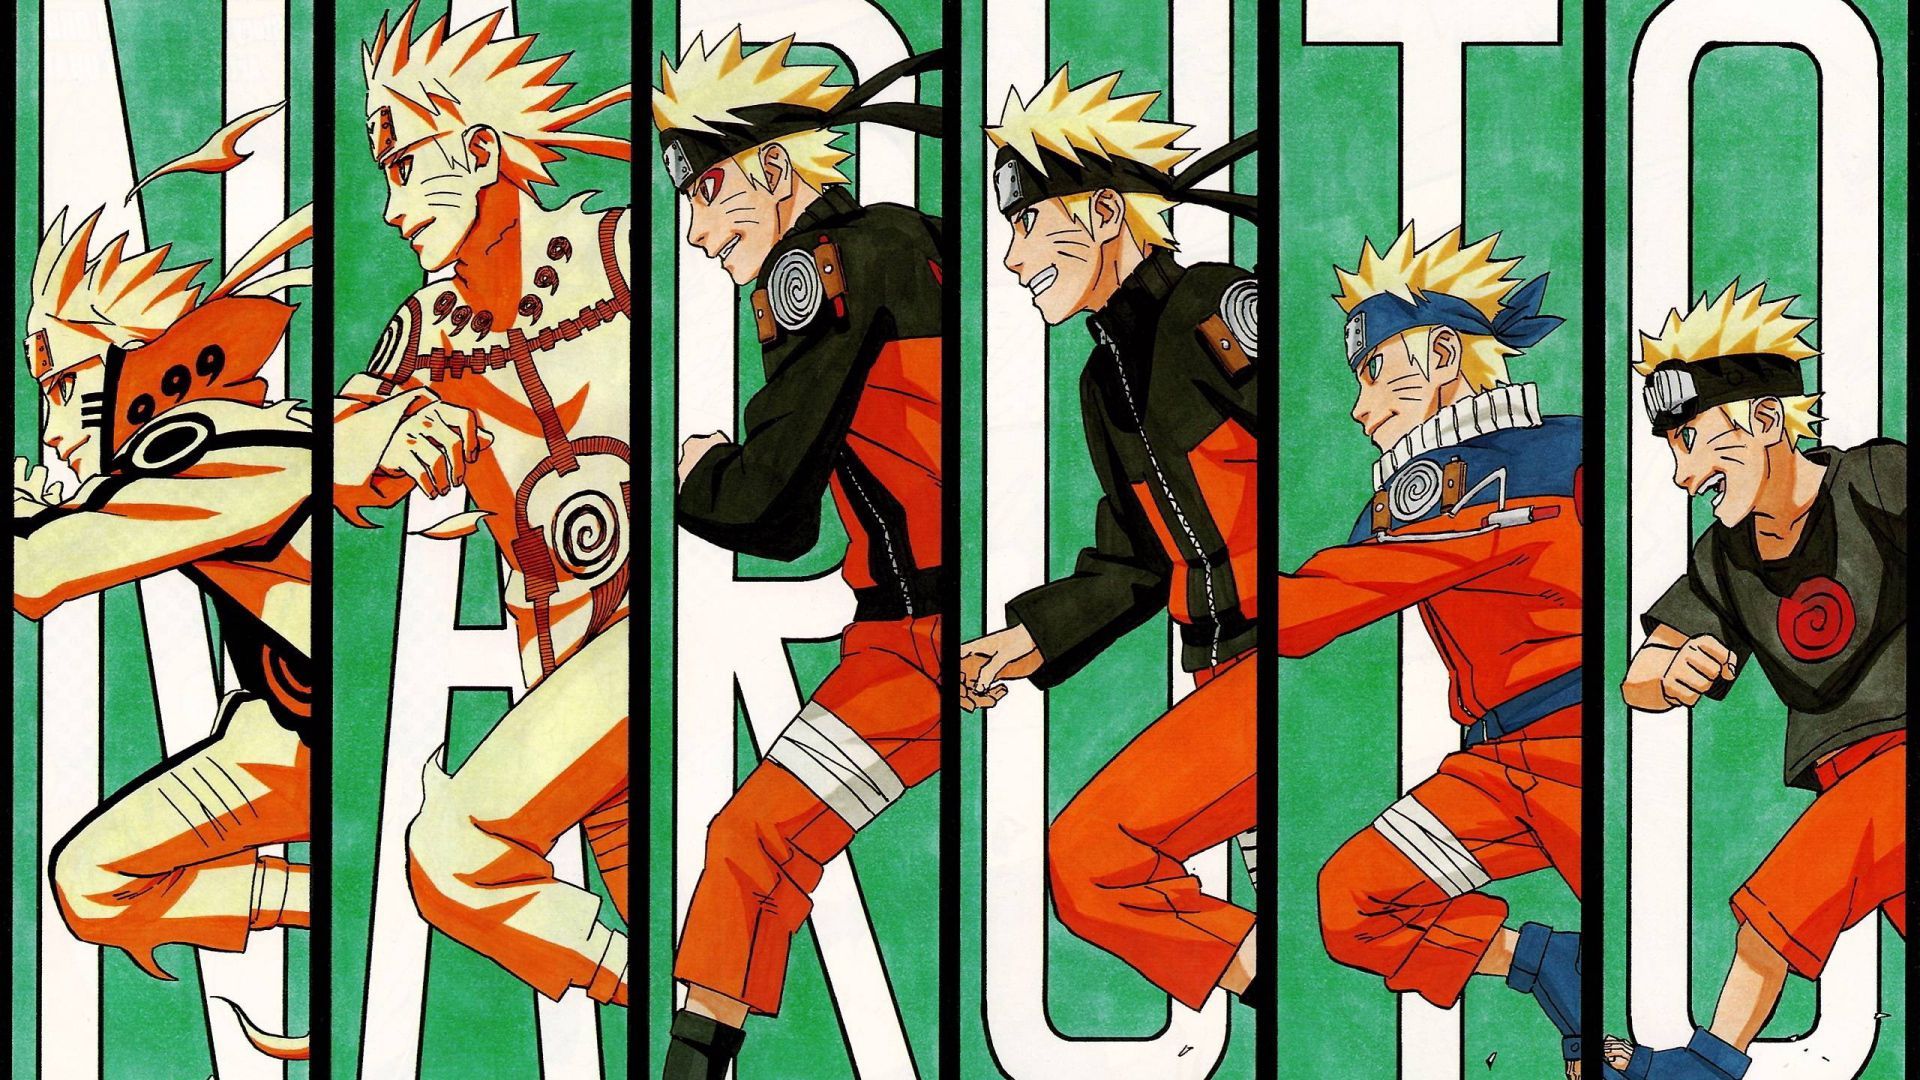 Book Of Naruto [Memes, Pics and More!]- Some Naruto Wallpaper